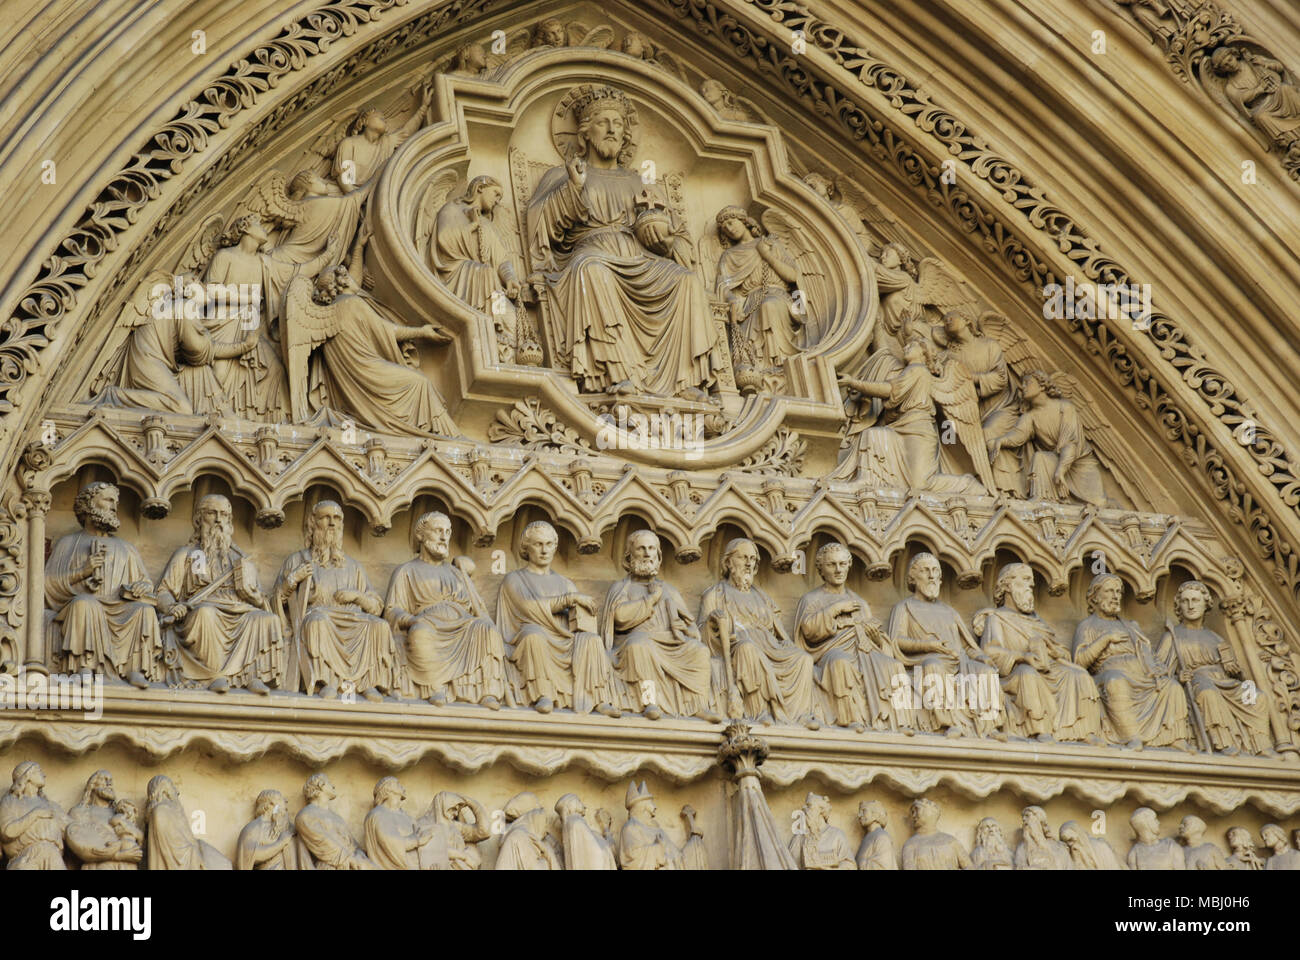 Le tympan au-dessus de la façade nord/Entrée principale de l'abbaye de Westminster Banque D'Images